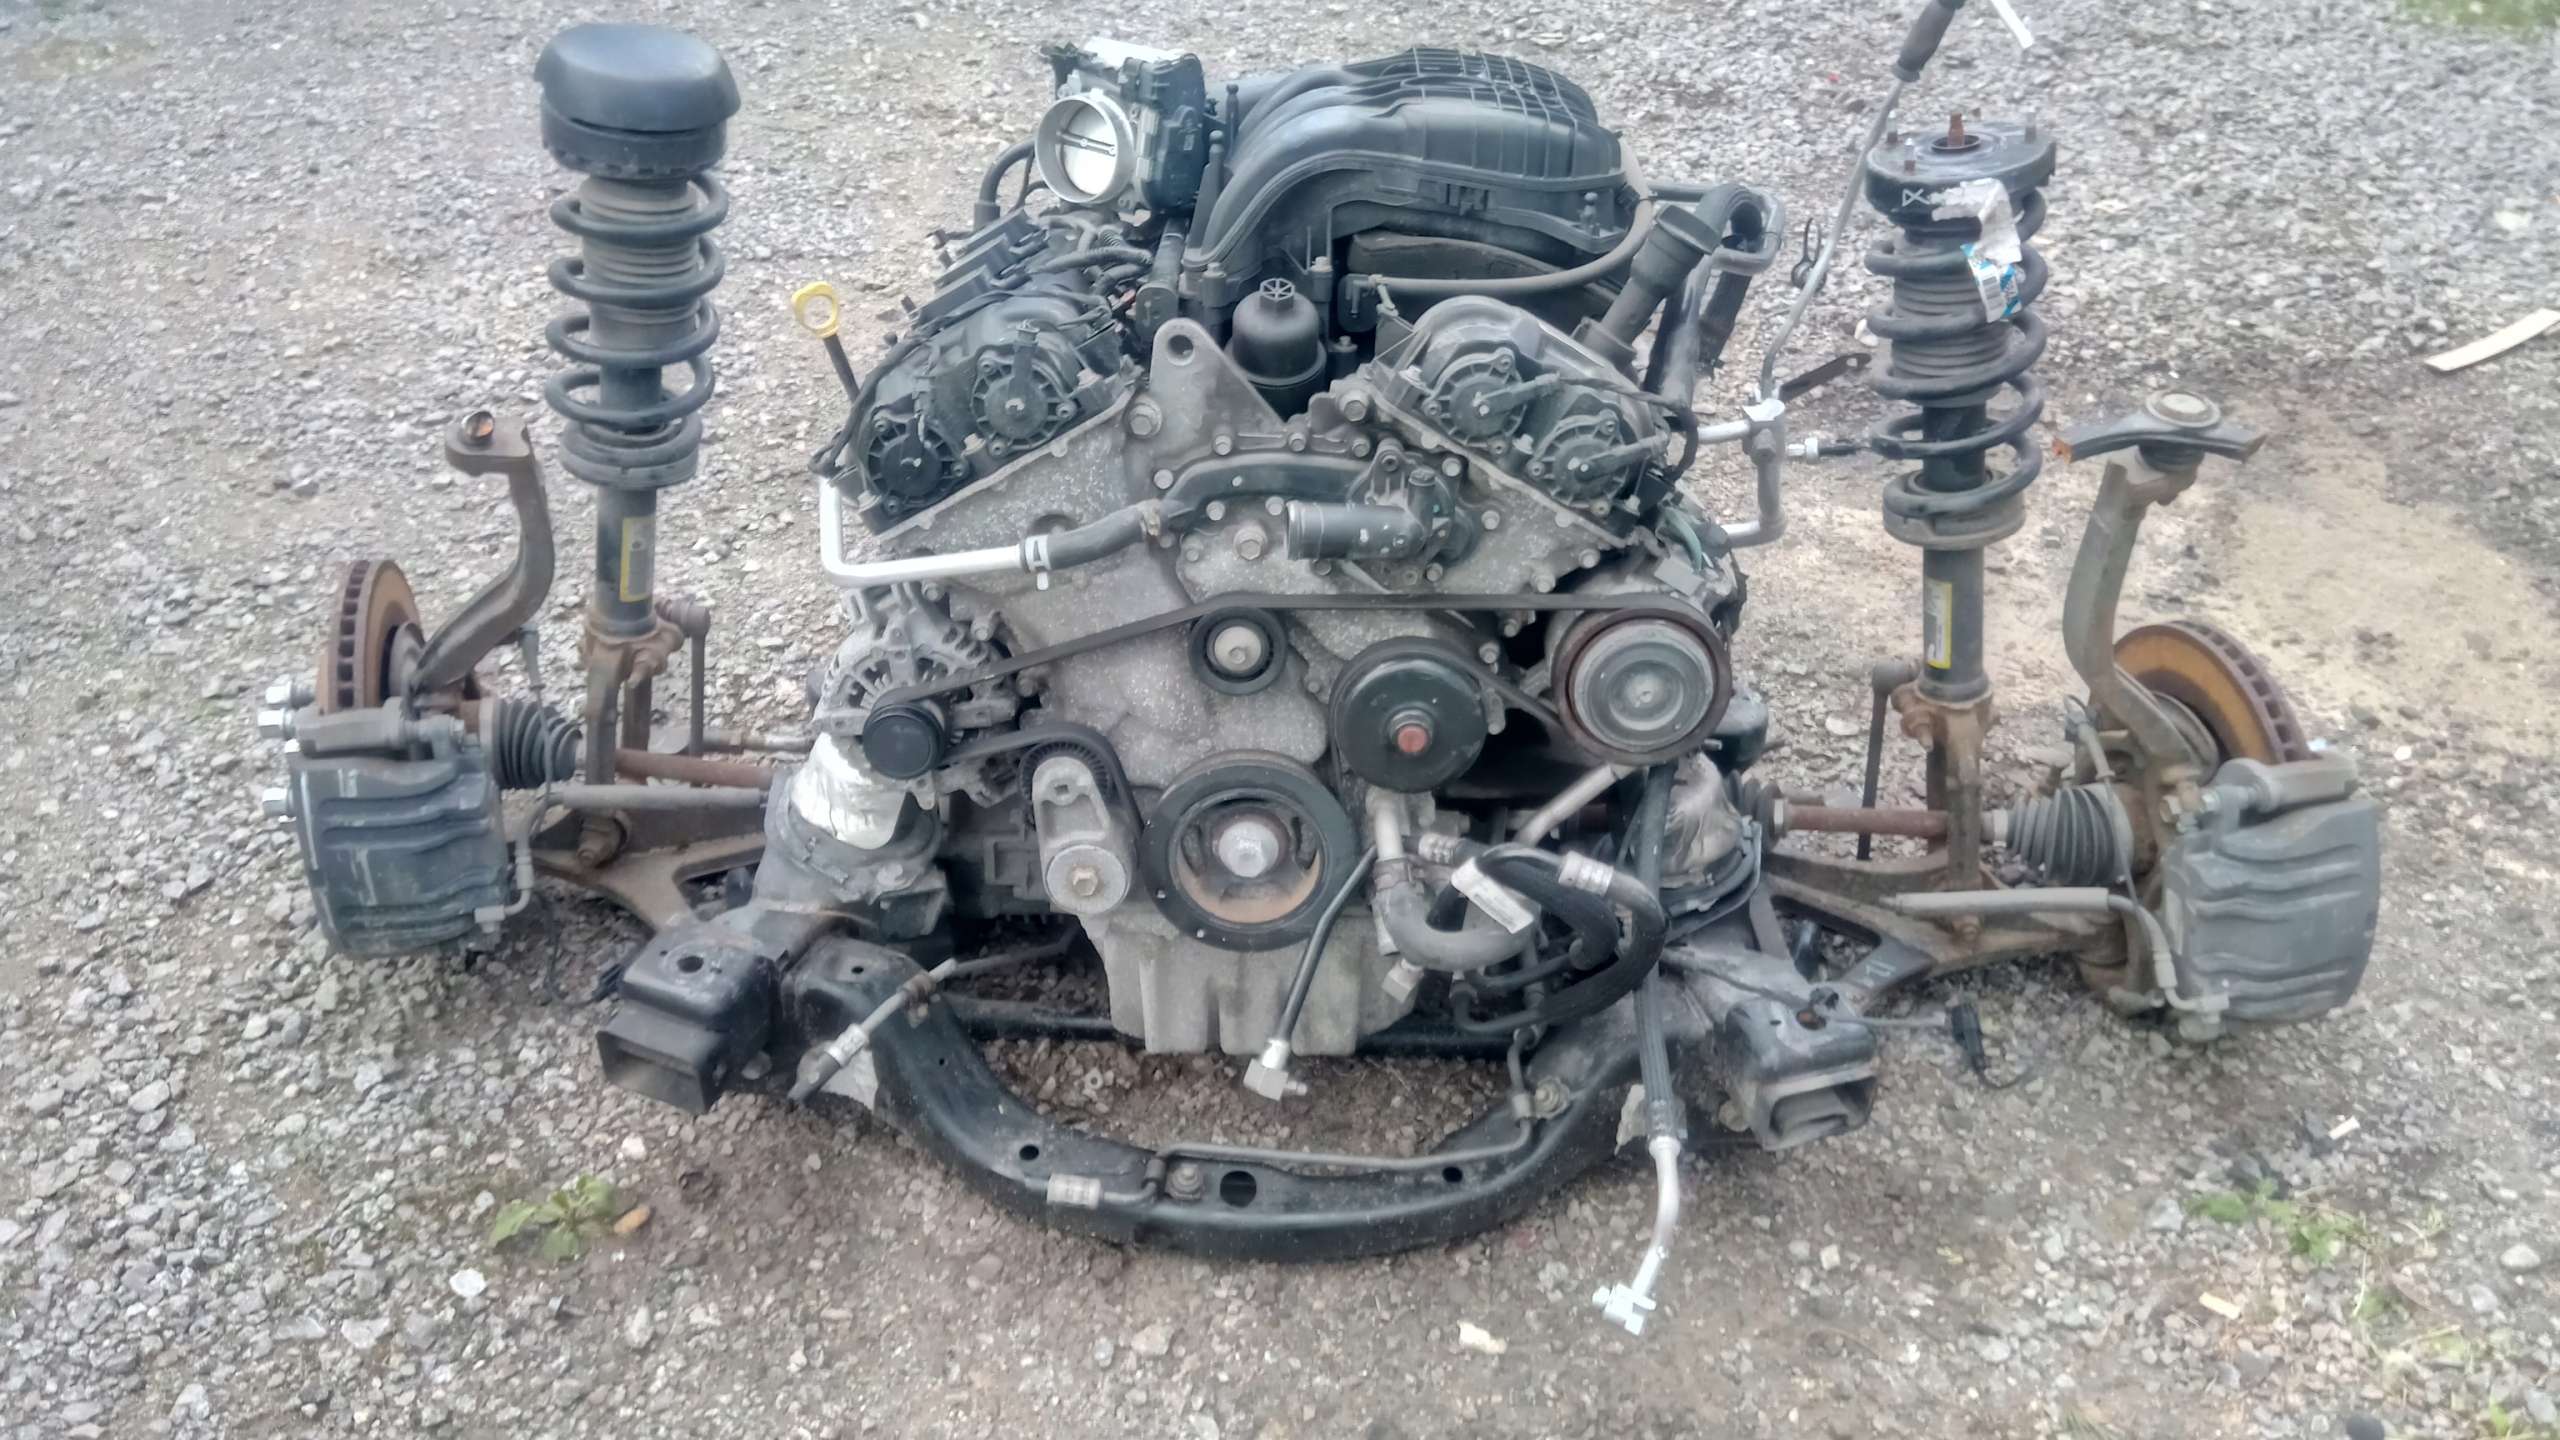 Двигатель Крайслер 2.4 на автомобили ГАЗ (Газель, Волга, Соболь)